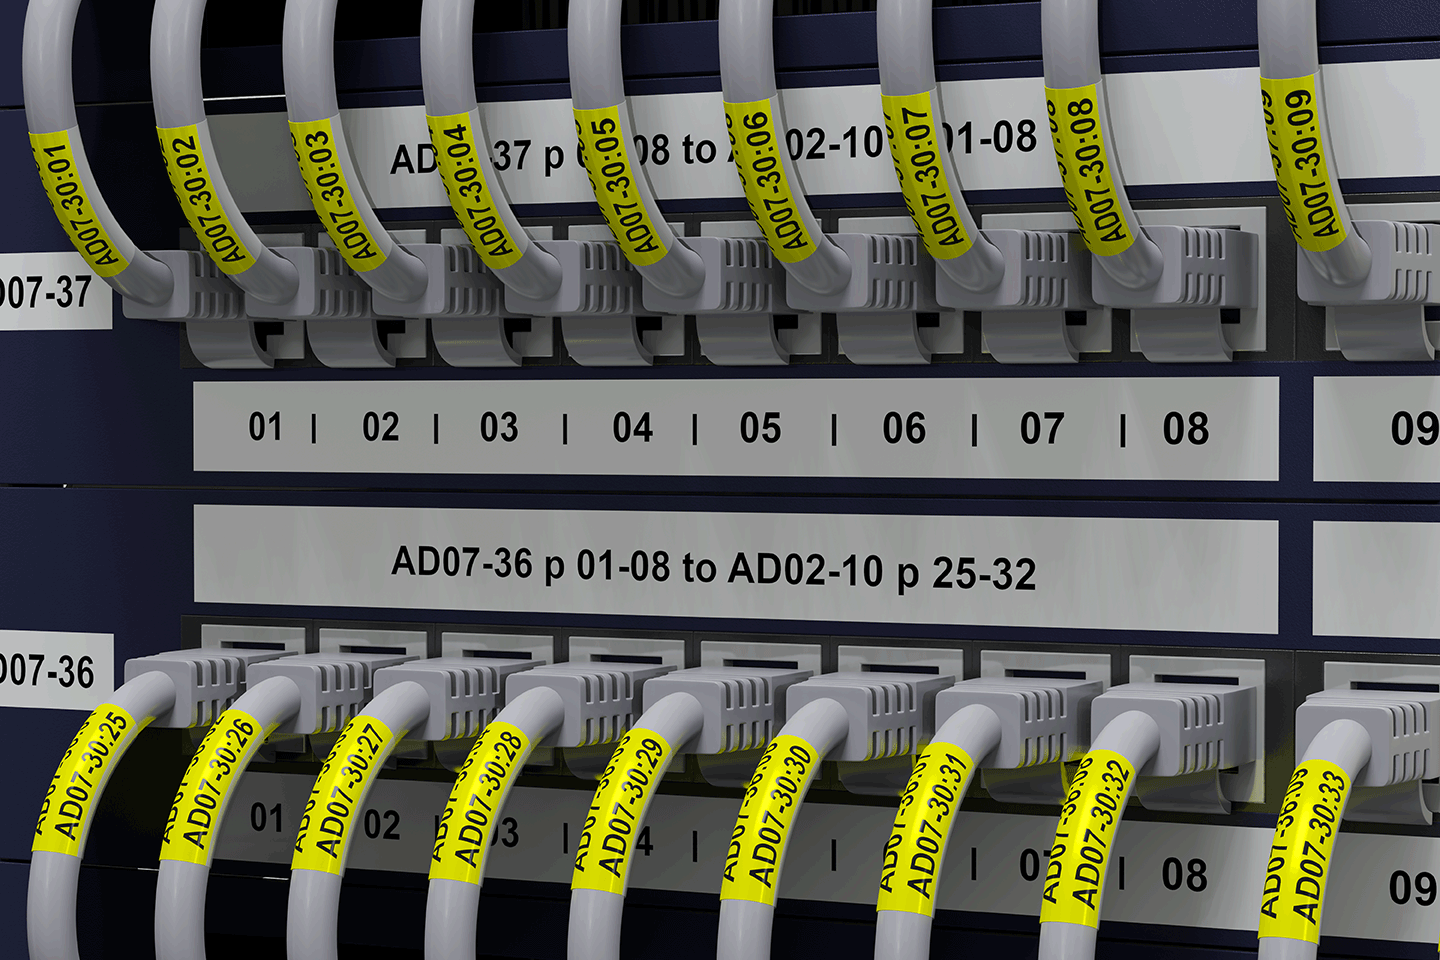 PT-E550WNIVP network infrastructure label printer kit 3